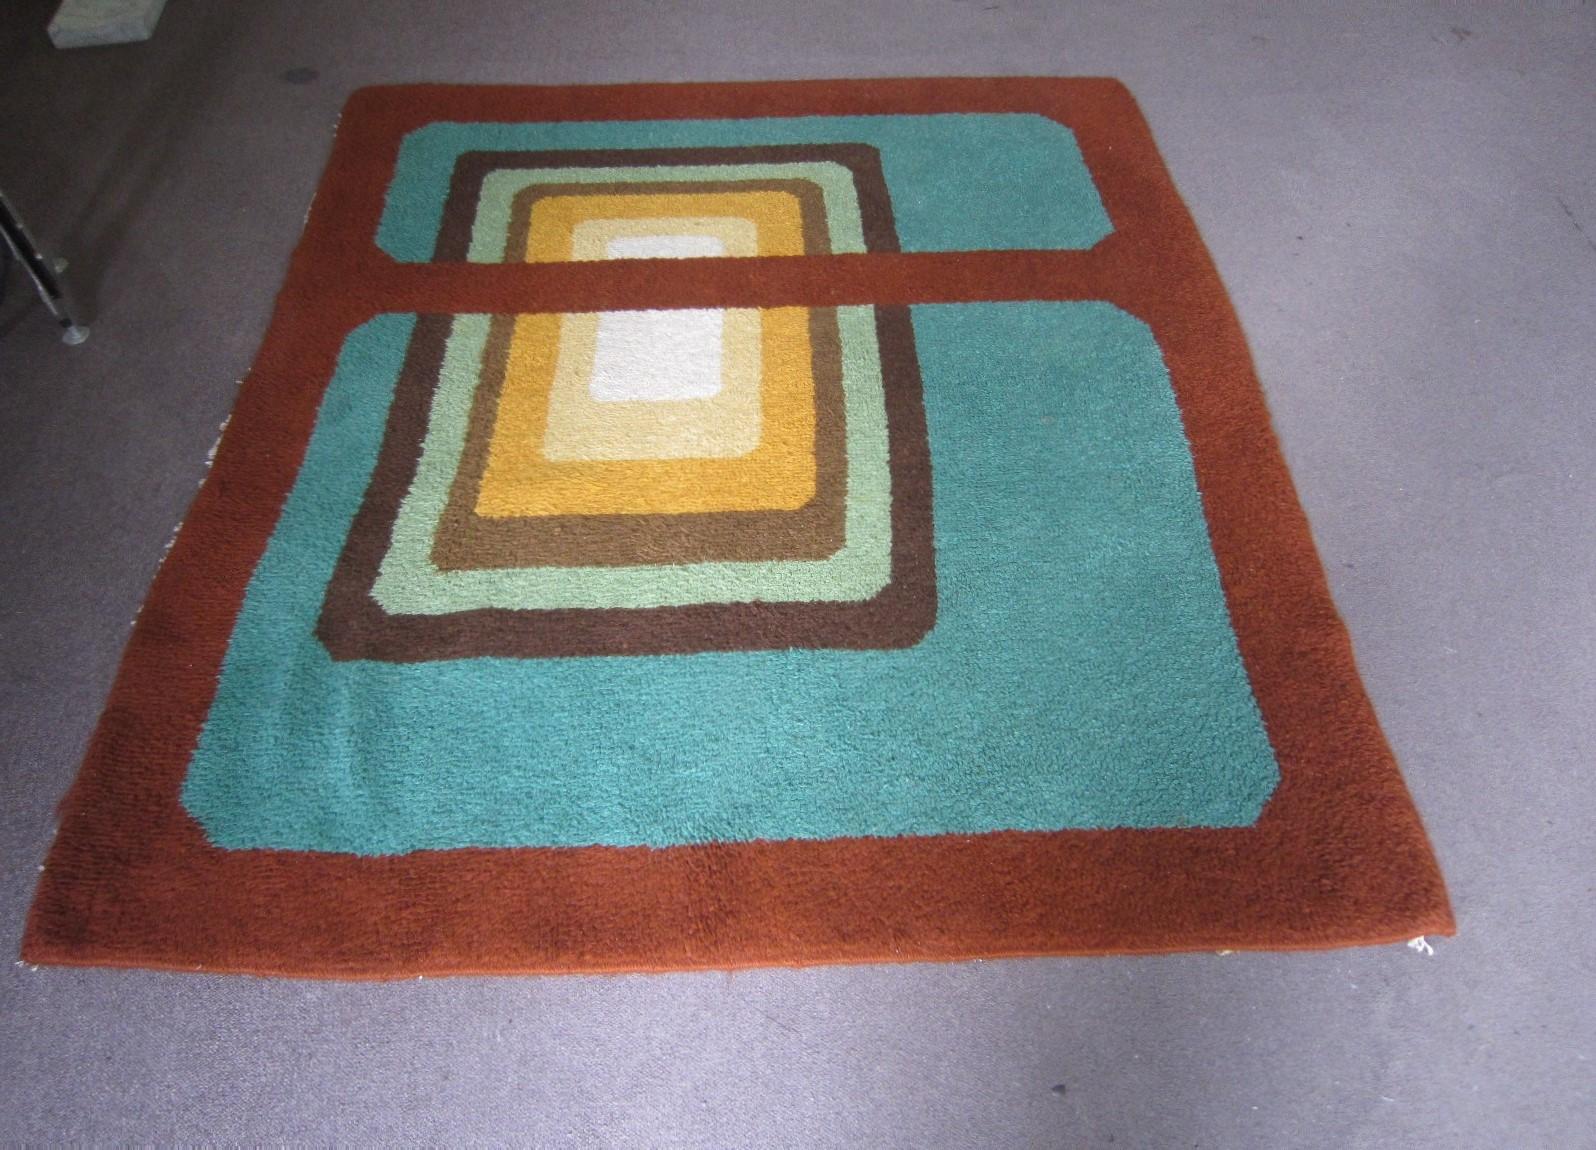 Abstrakter, geometrisch gemusterter Vintage-Teppich in bunten Rotbraun-, Grün-, Ocker-, Gold- und Brauntönen.
Quadratische und rechteckige Überlagerungen und Farbblockierungen sind bei diesem Mod-Design vertreten.
Dieser dekorative Teppich wurde